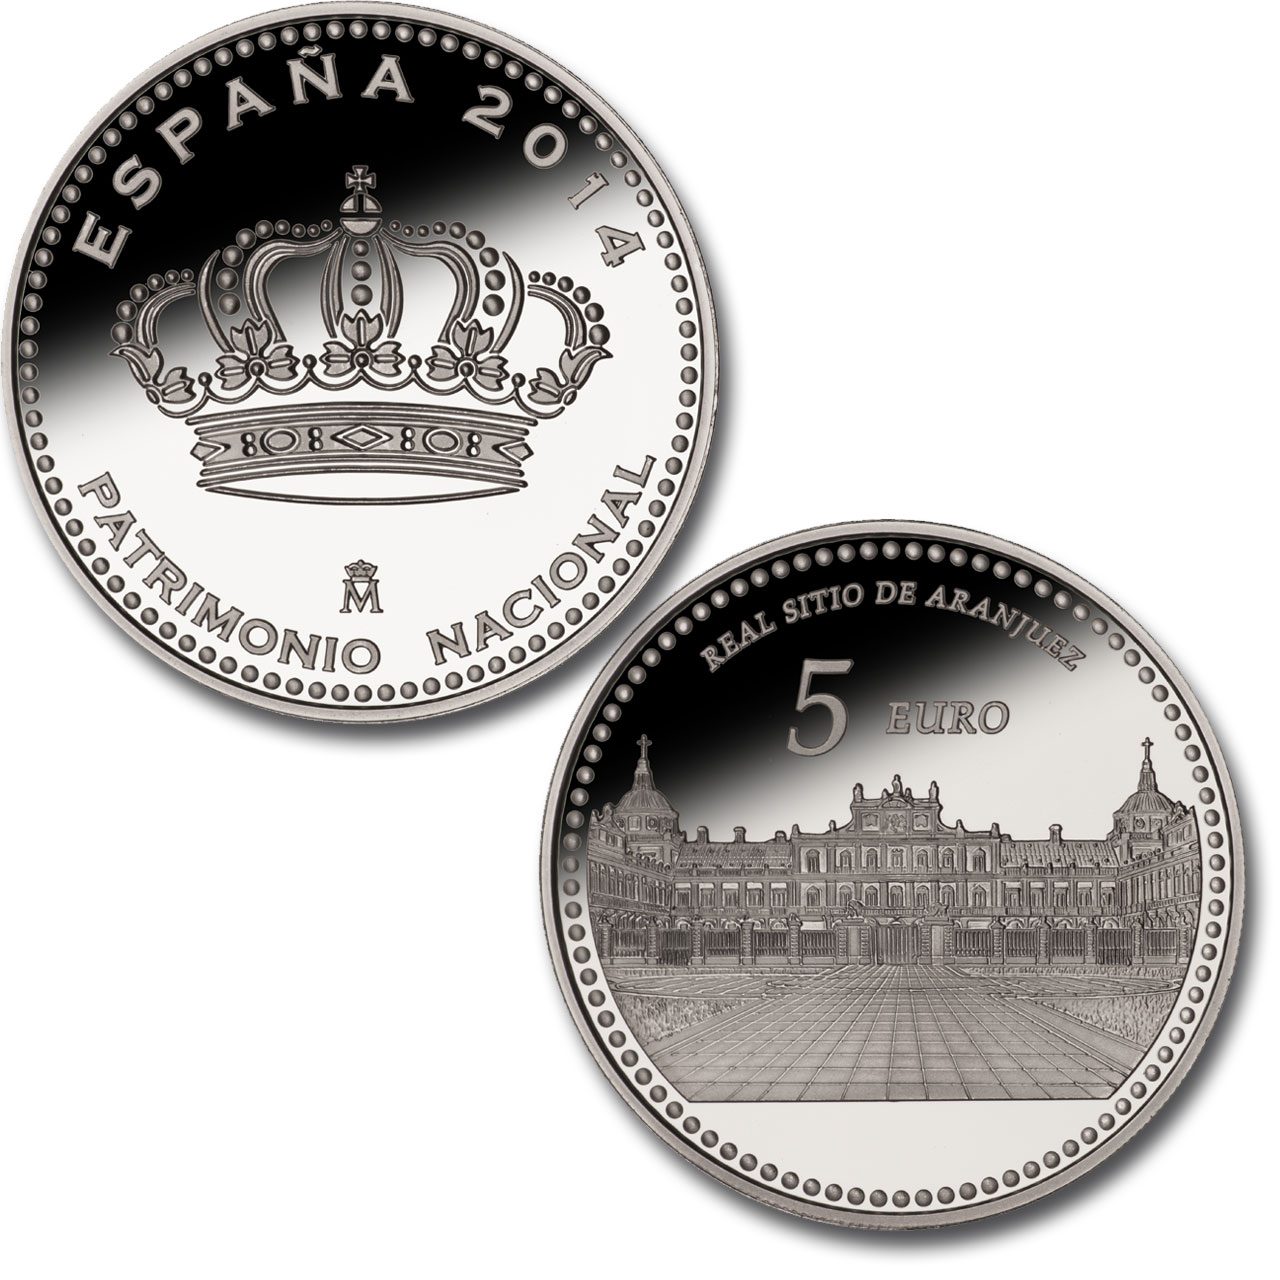 Palacio Real de Madrid - 4 reales plata . Haga clic para ver imagen ampliada. Abre en ventana nueva